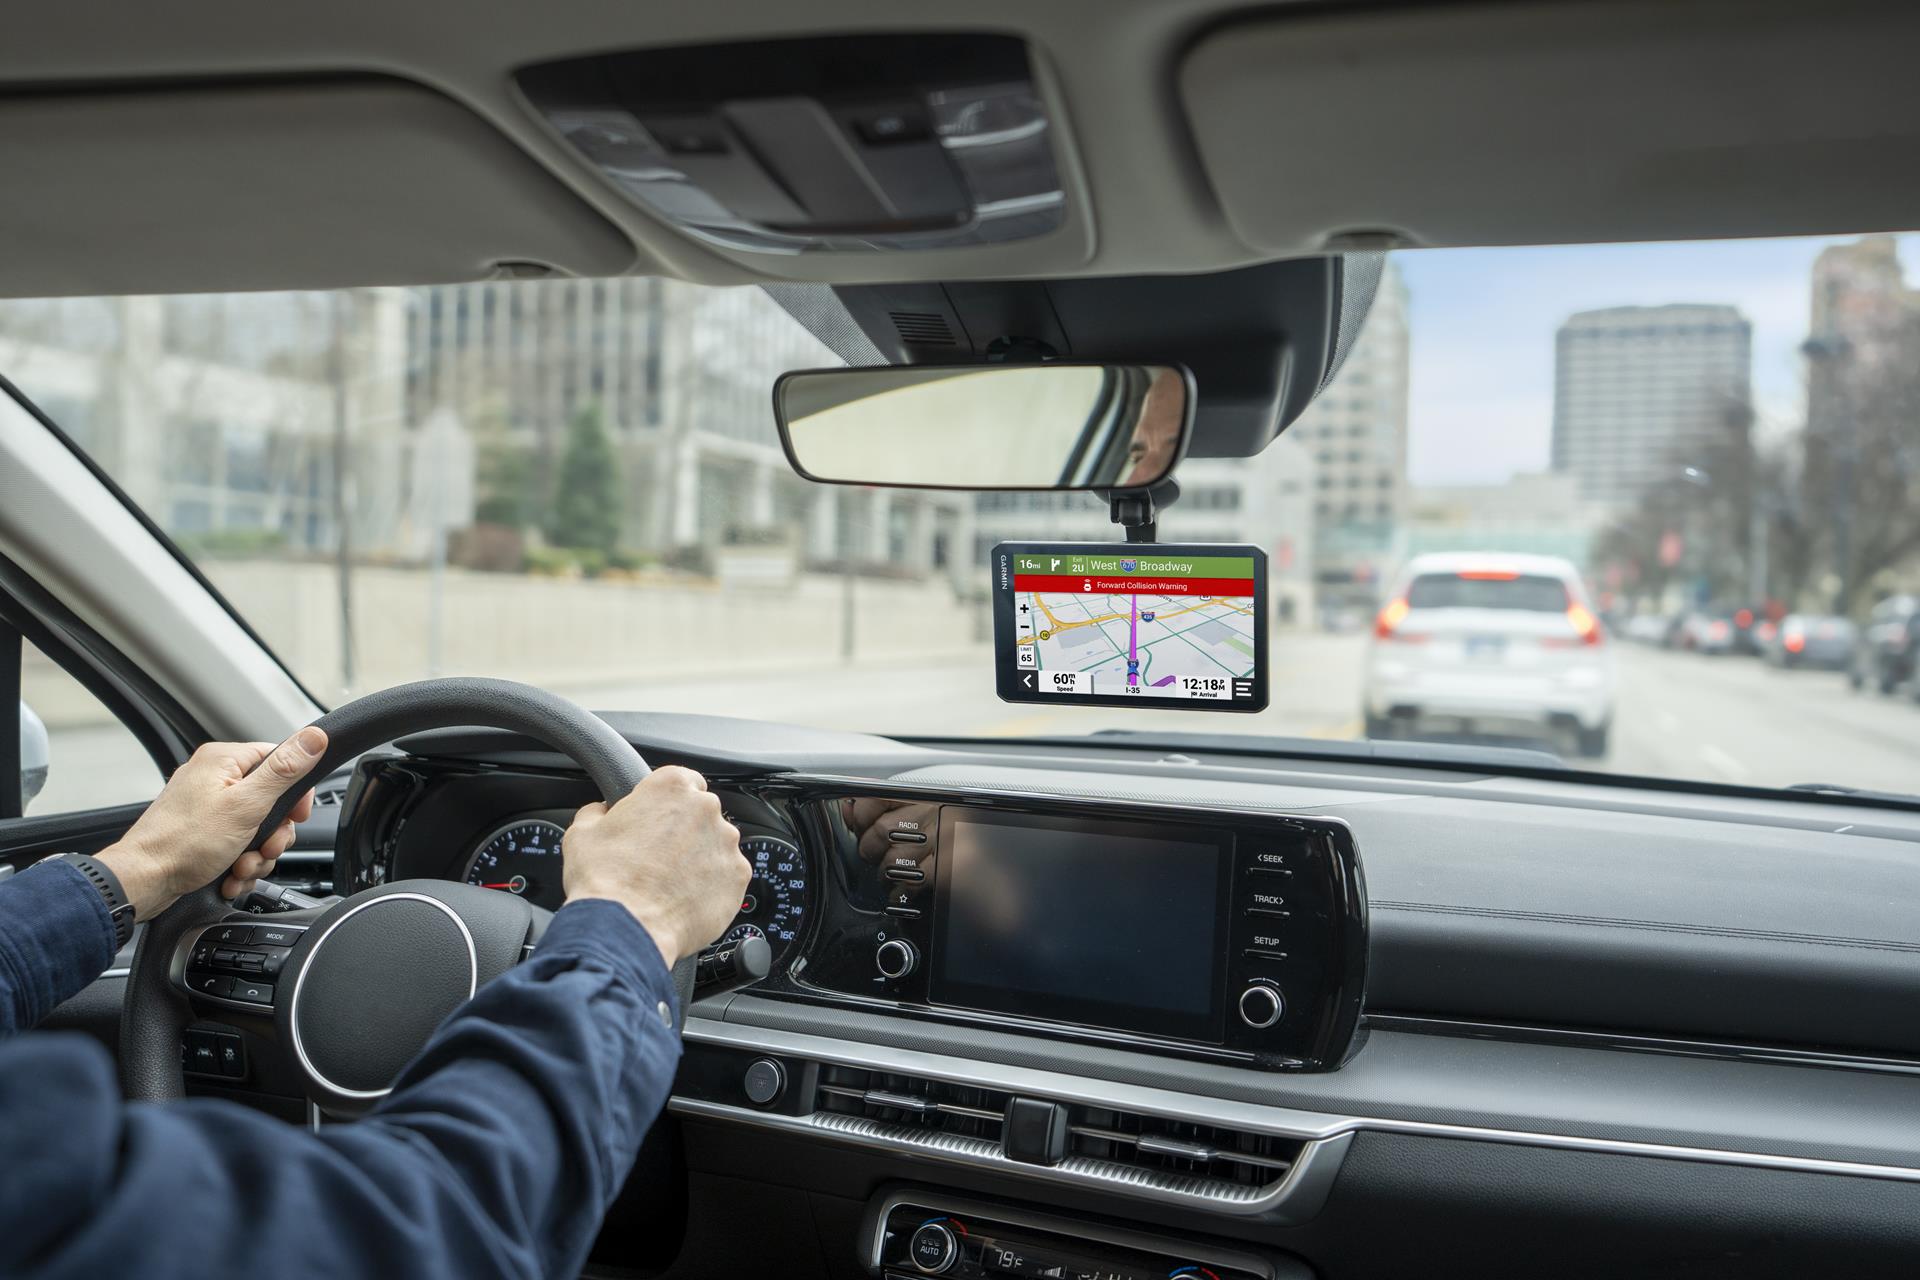 Garmin DriveCam 76 7" GPS palydovinė navigacijos sistema su įmontuotu vaizdo registratoriumi ir skaitmenine eismo informacija